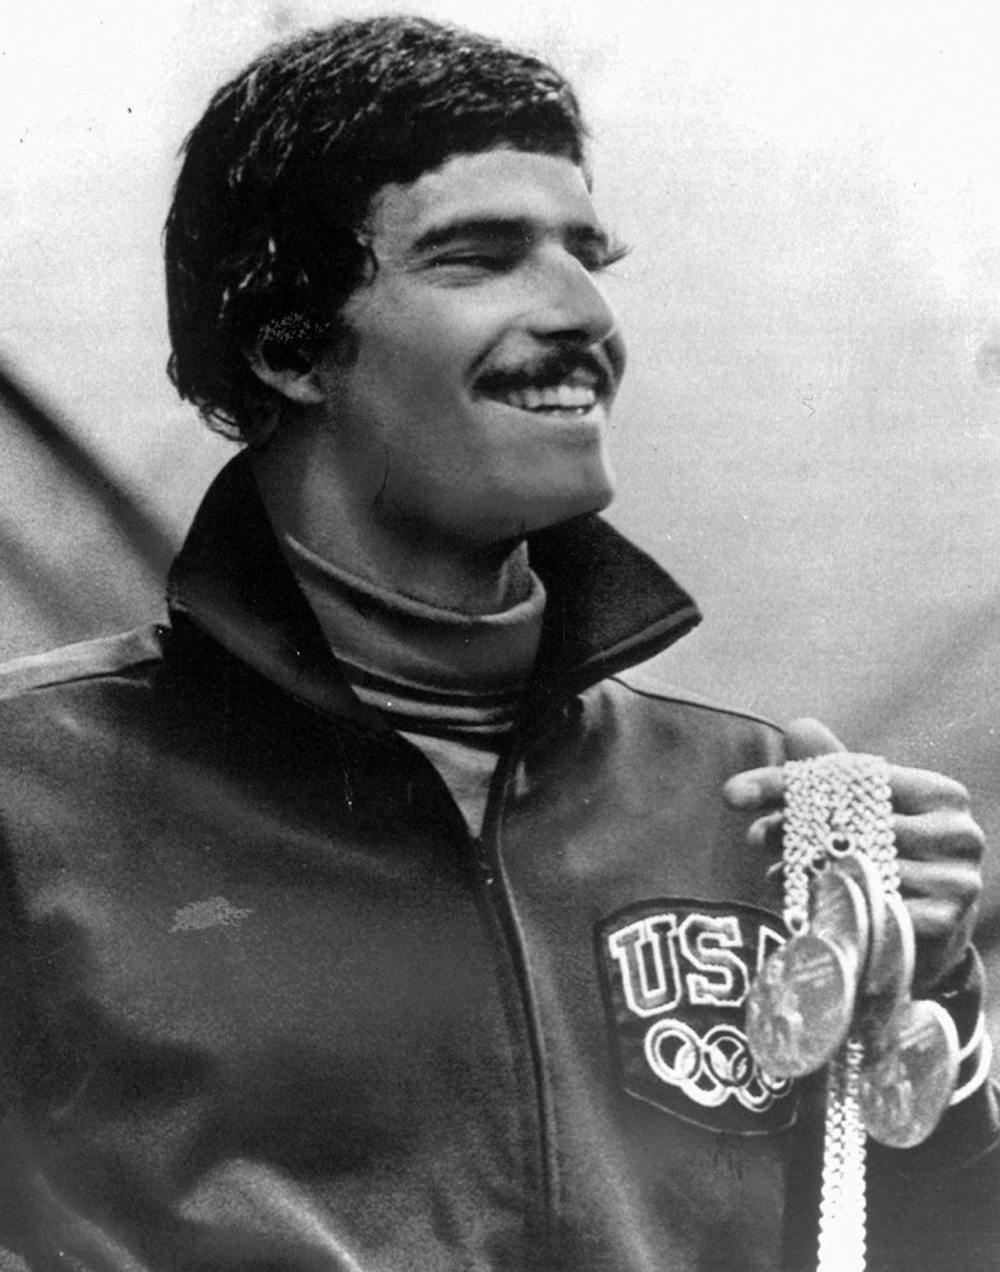 在1972年8月31日的德国慕尼黑奥运会上，美国游泳运动员马克·施皮茨获得了他在奥运会上获得的7枚金牌中的5枚。在2008年7月2日星期三接受美联社采访时，这位1972年慕尼黑奥运会的明星毫不怀疑地表示，他认为36岁的自己在奥运会上的记录只会再持续一个月左右。迈克尔·菲尔普斯将在北京奥运会上试图打破施皮茨七枚金牌的纪录。(美联社照片/池,文件)